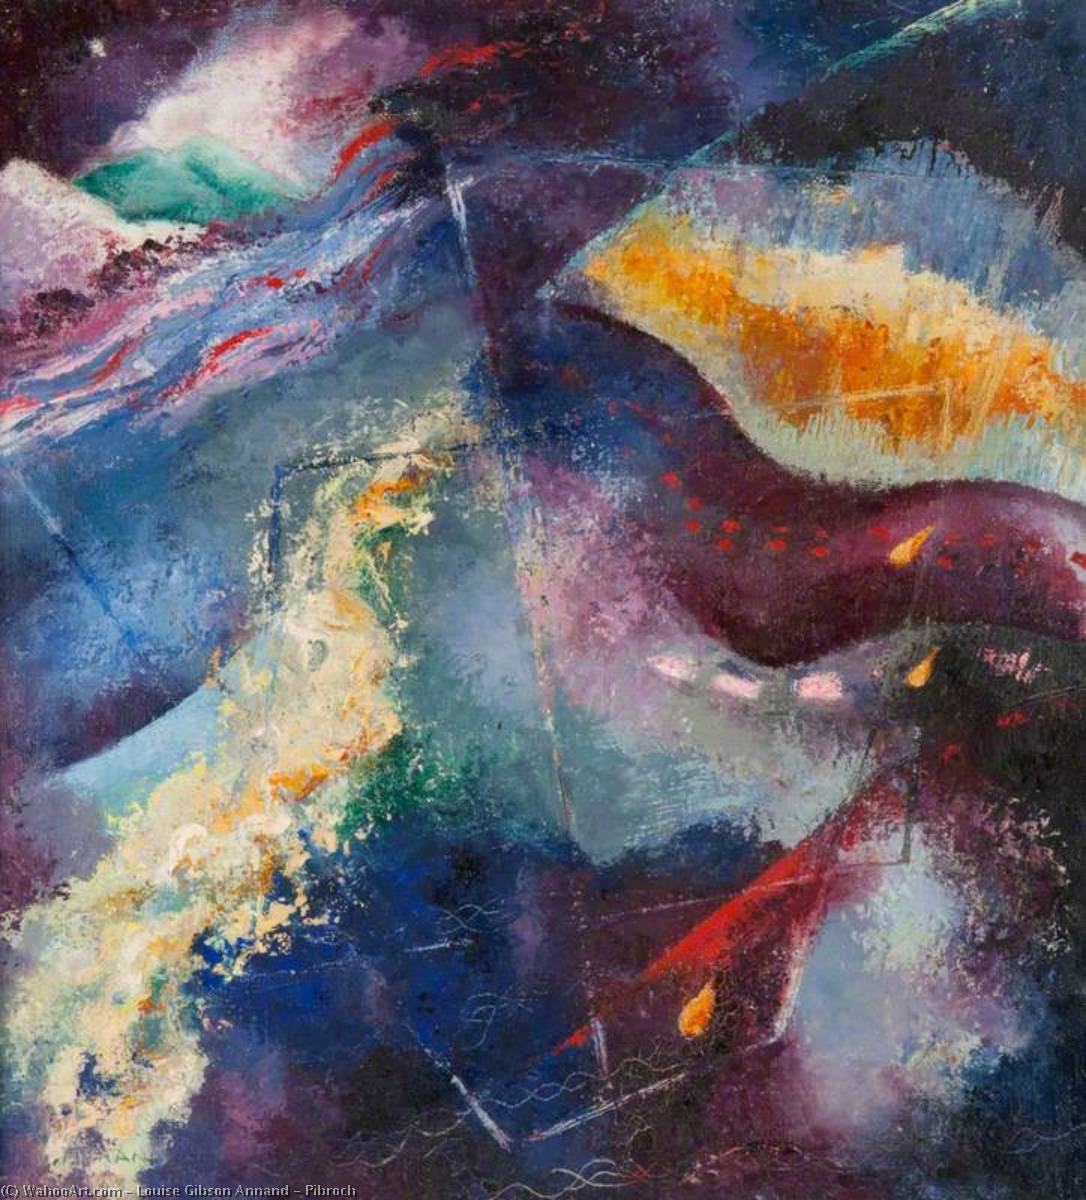 Pibroch, 1948 by Louise Gibson Annand Louise Gibson Annand | ArtsDot.com